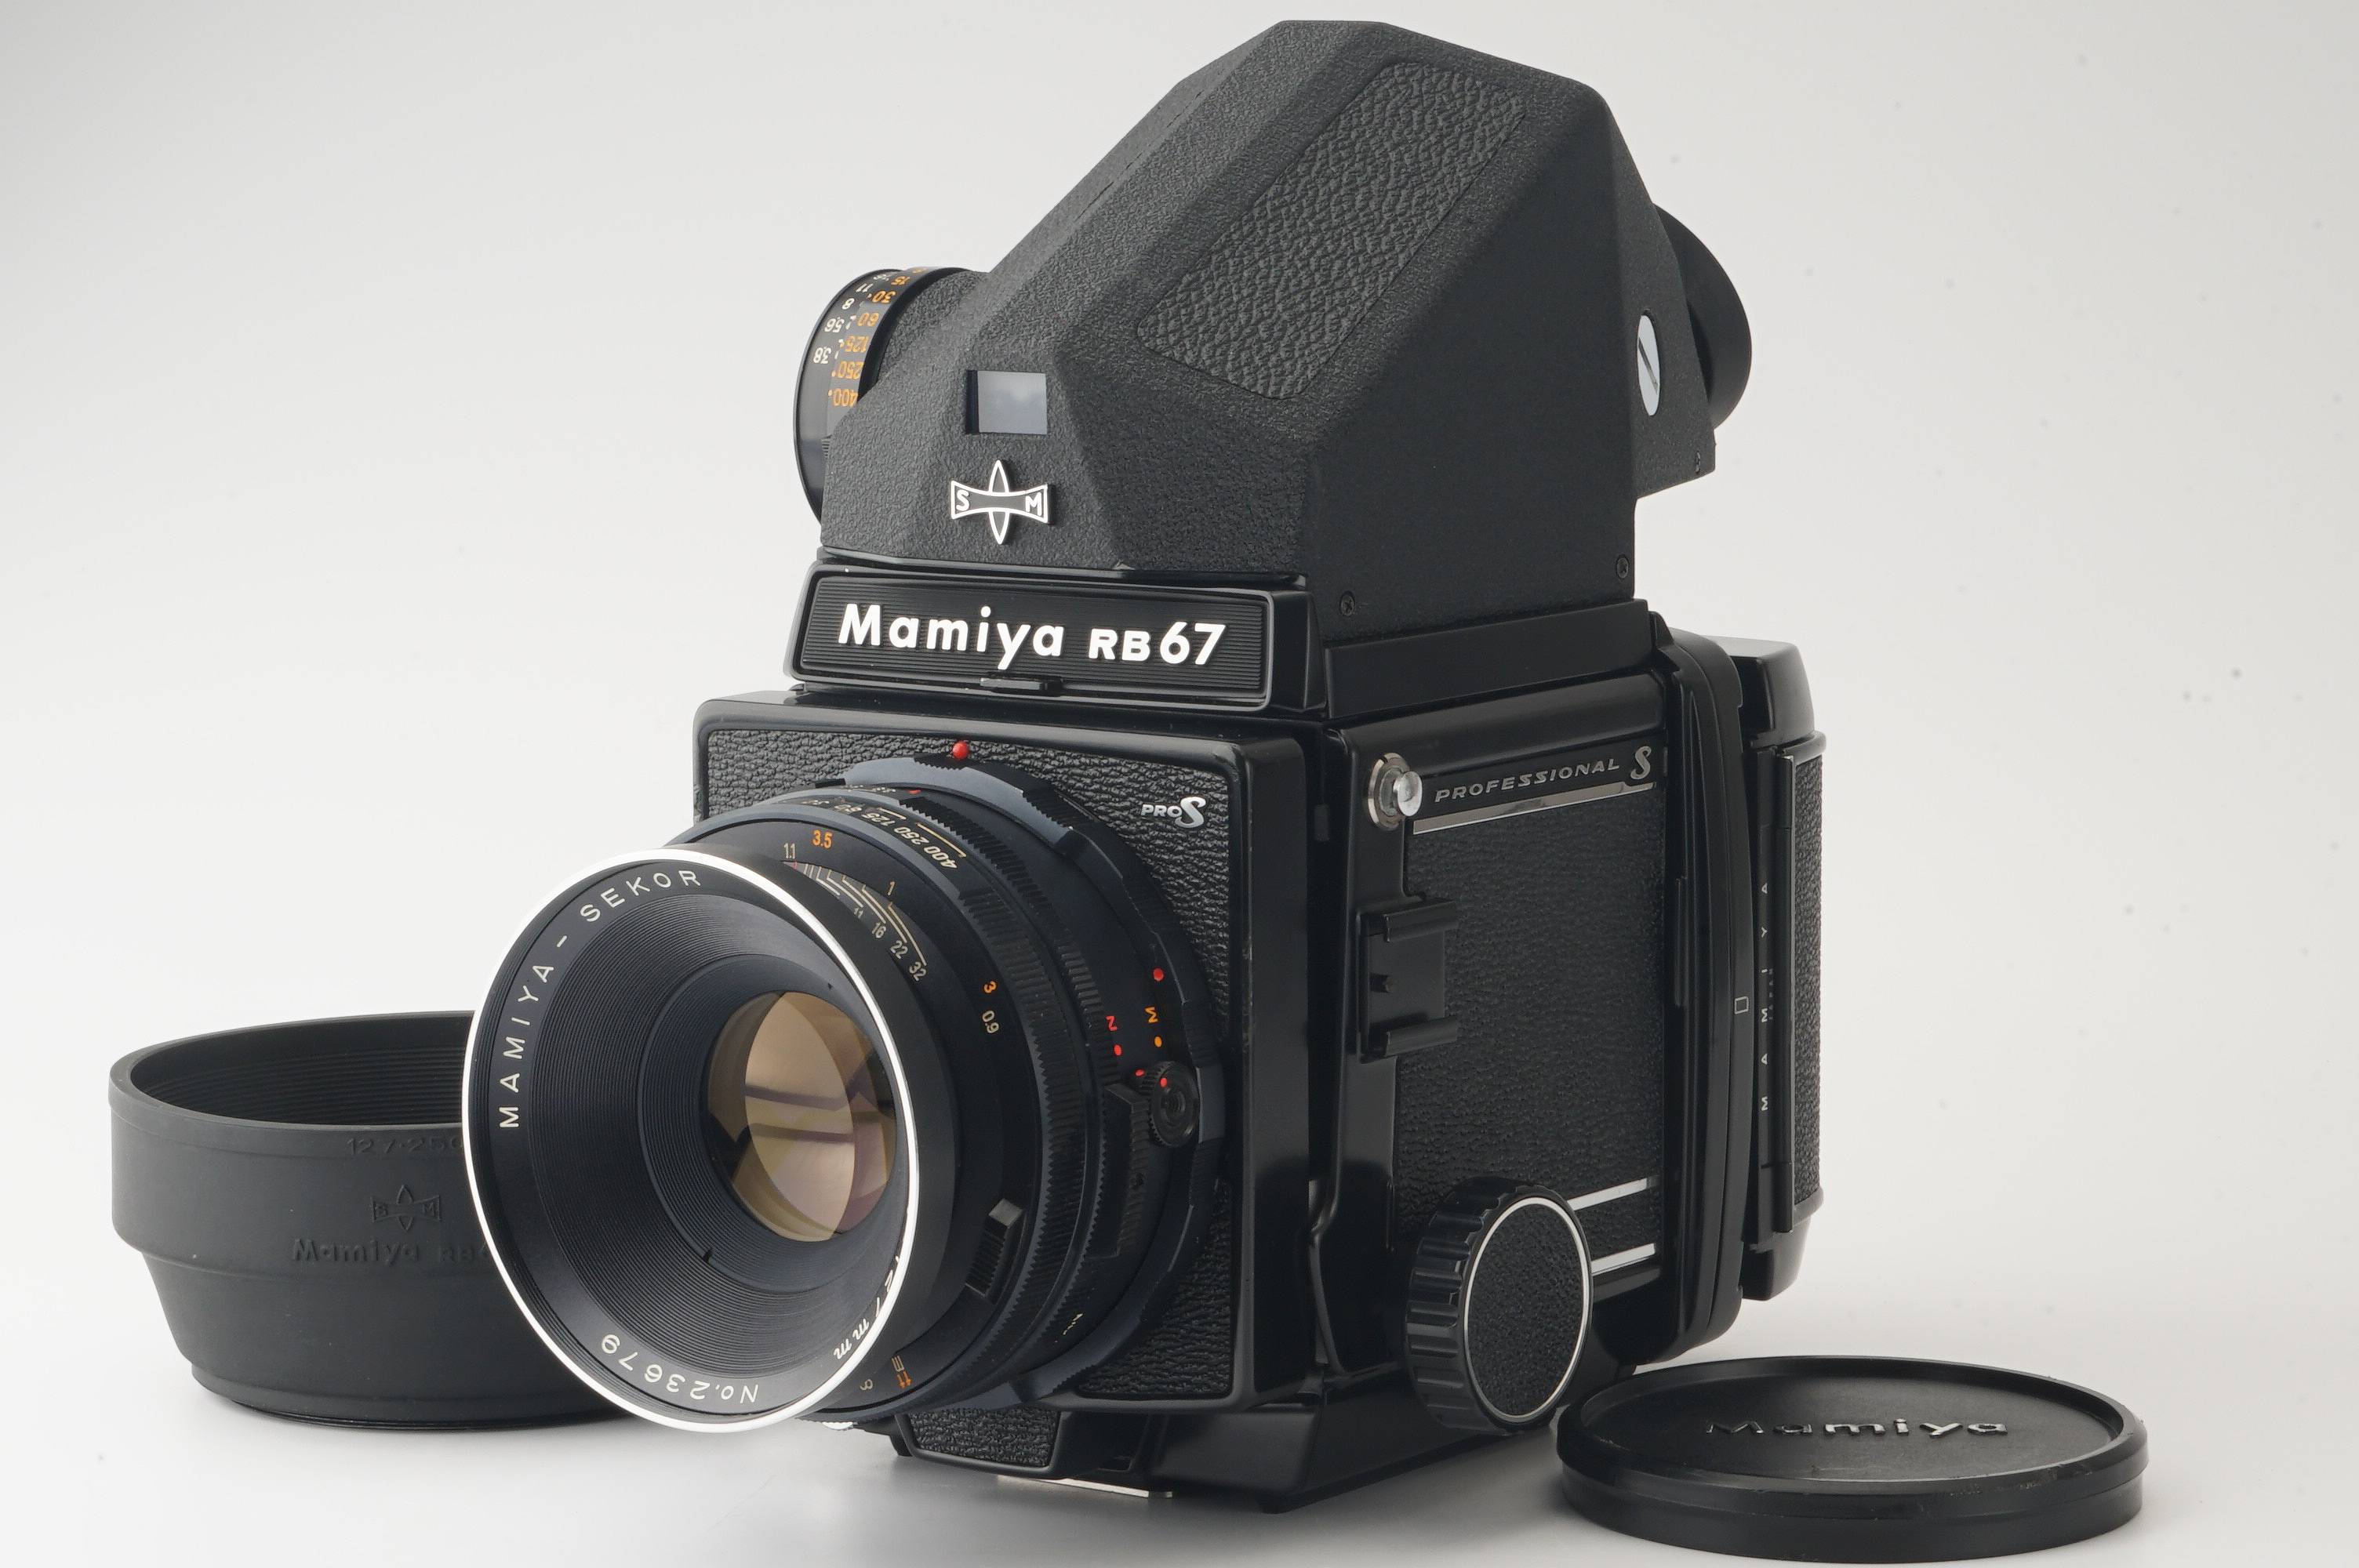 Mamiya RB67 PRO S 180mm F4.5 プリズムファインダーカメラ - フィルム 